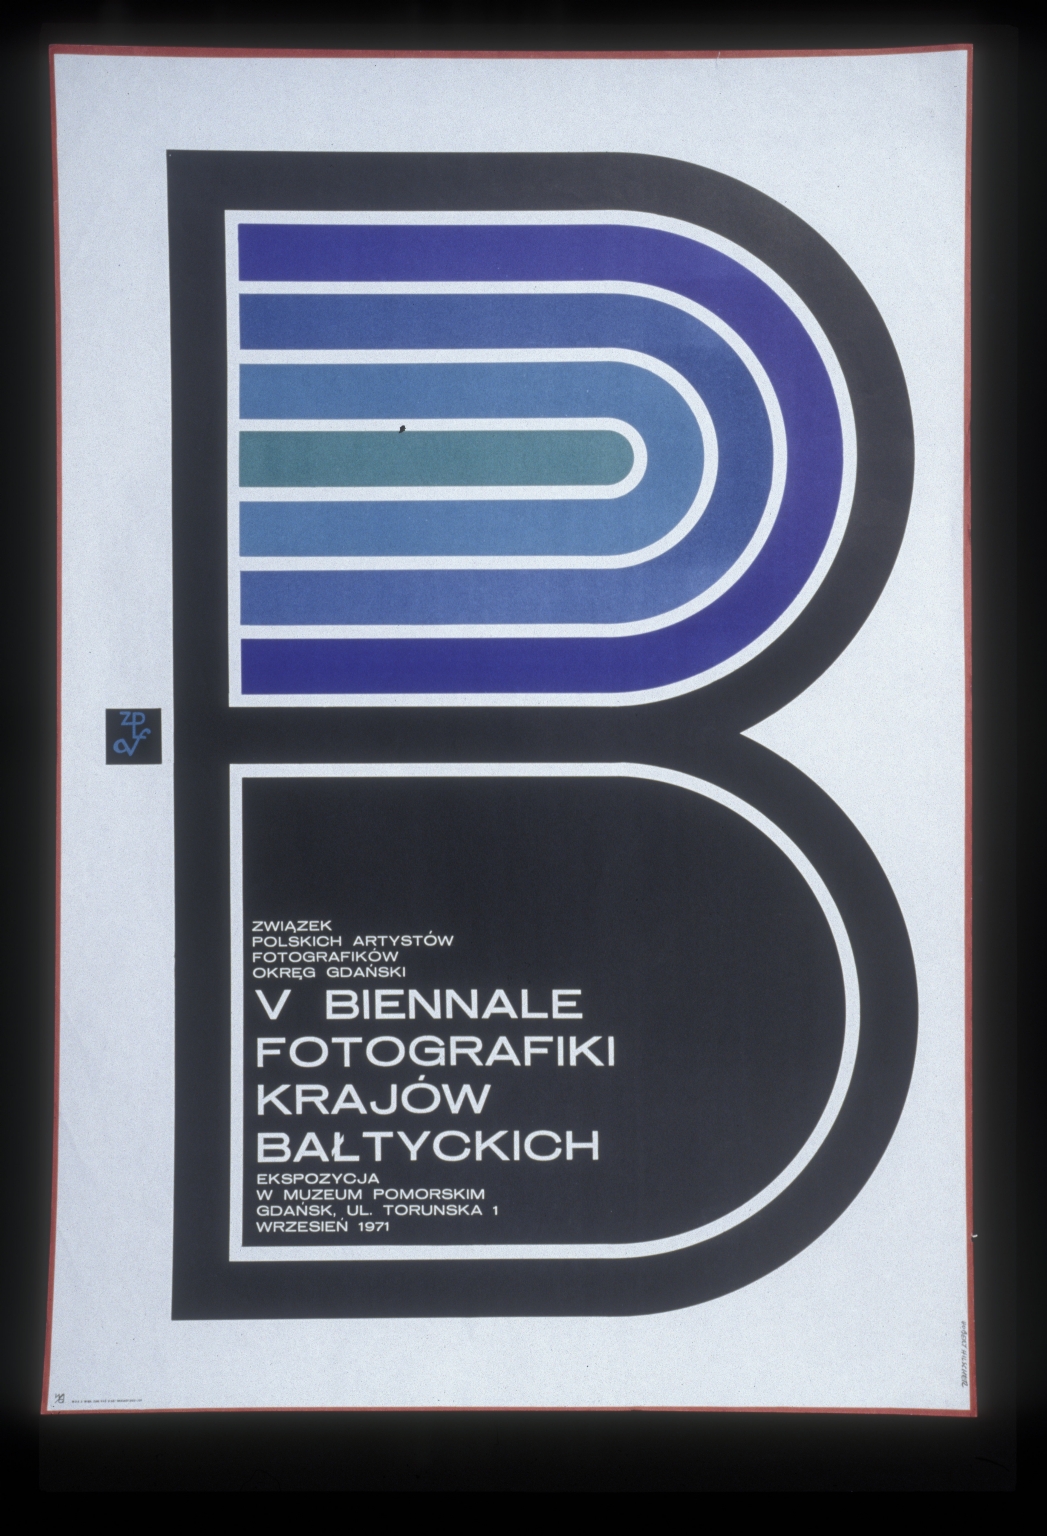 V Biennale Fotografiki Krajow Baltyckich: ekspozycja w Muzeum Pomorshim Gdansk, Ul Torundska 1, wrzesien1971